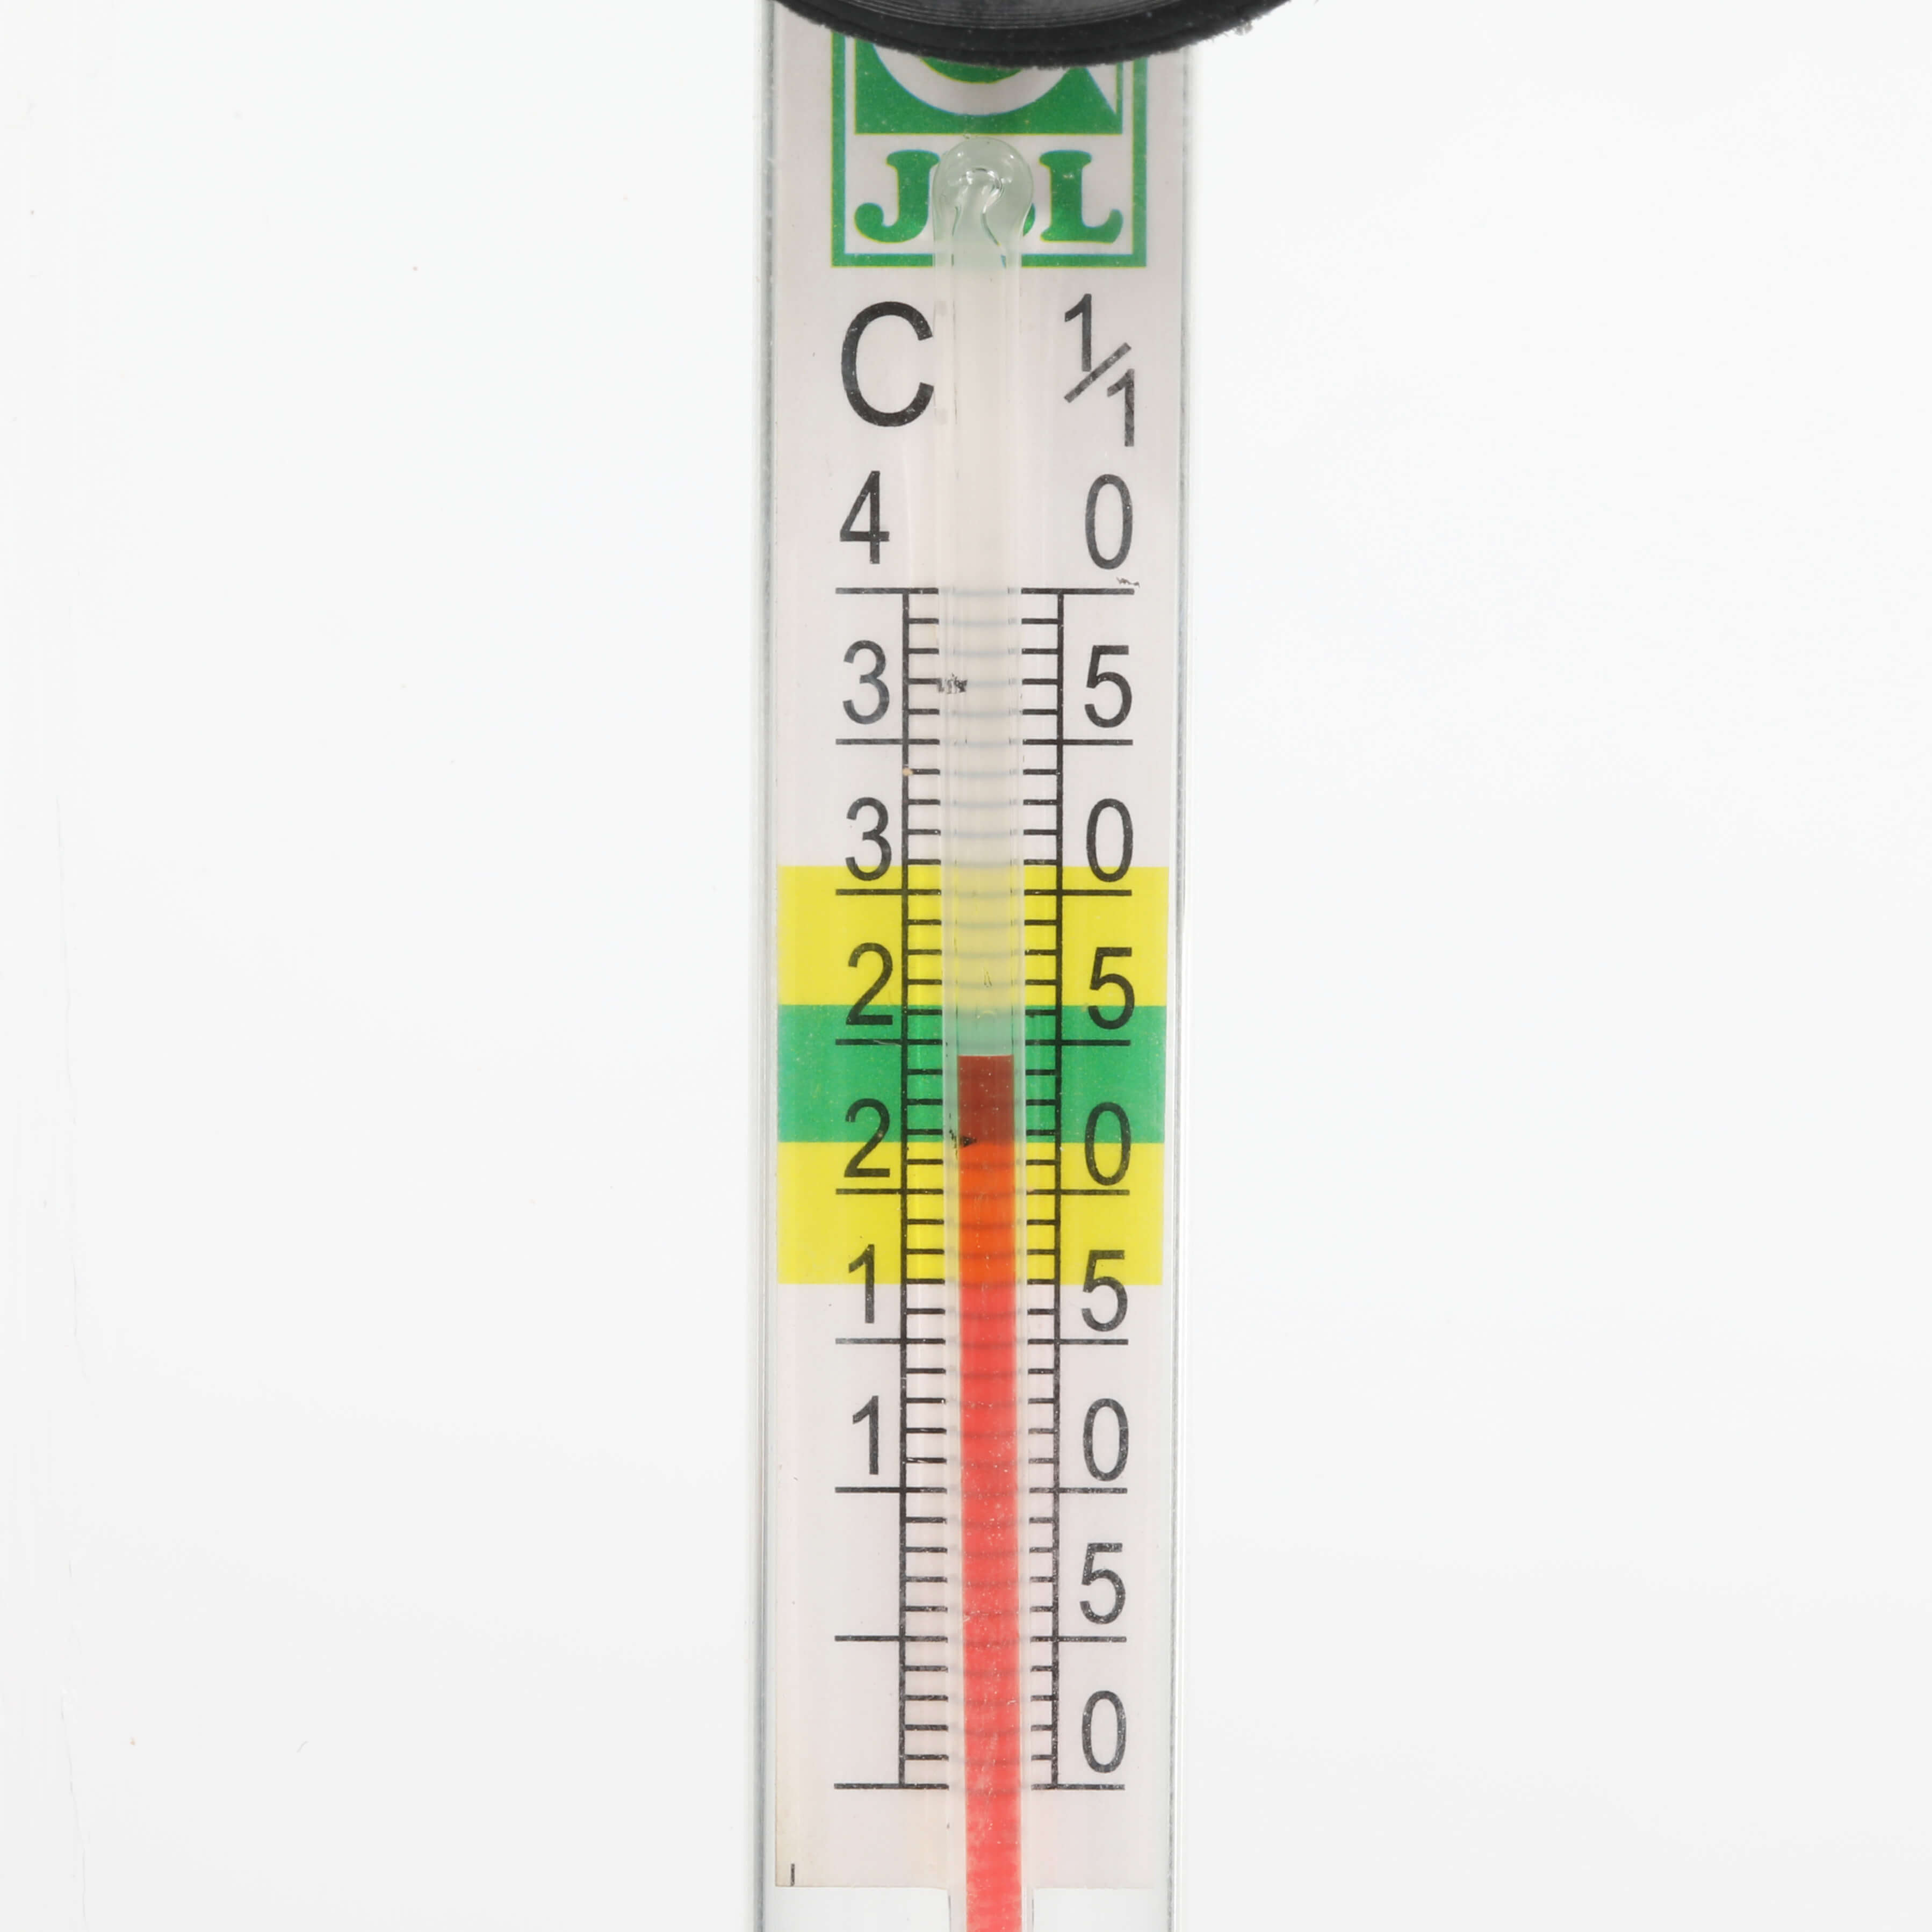 Thermometre + ventouse